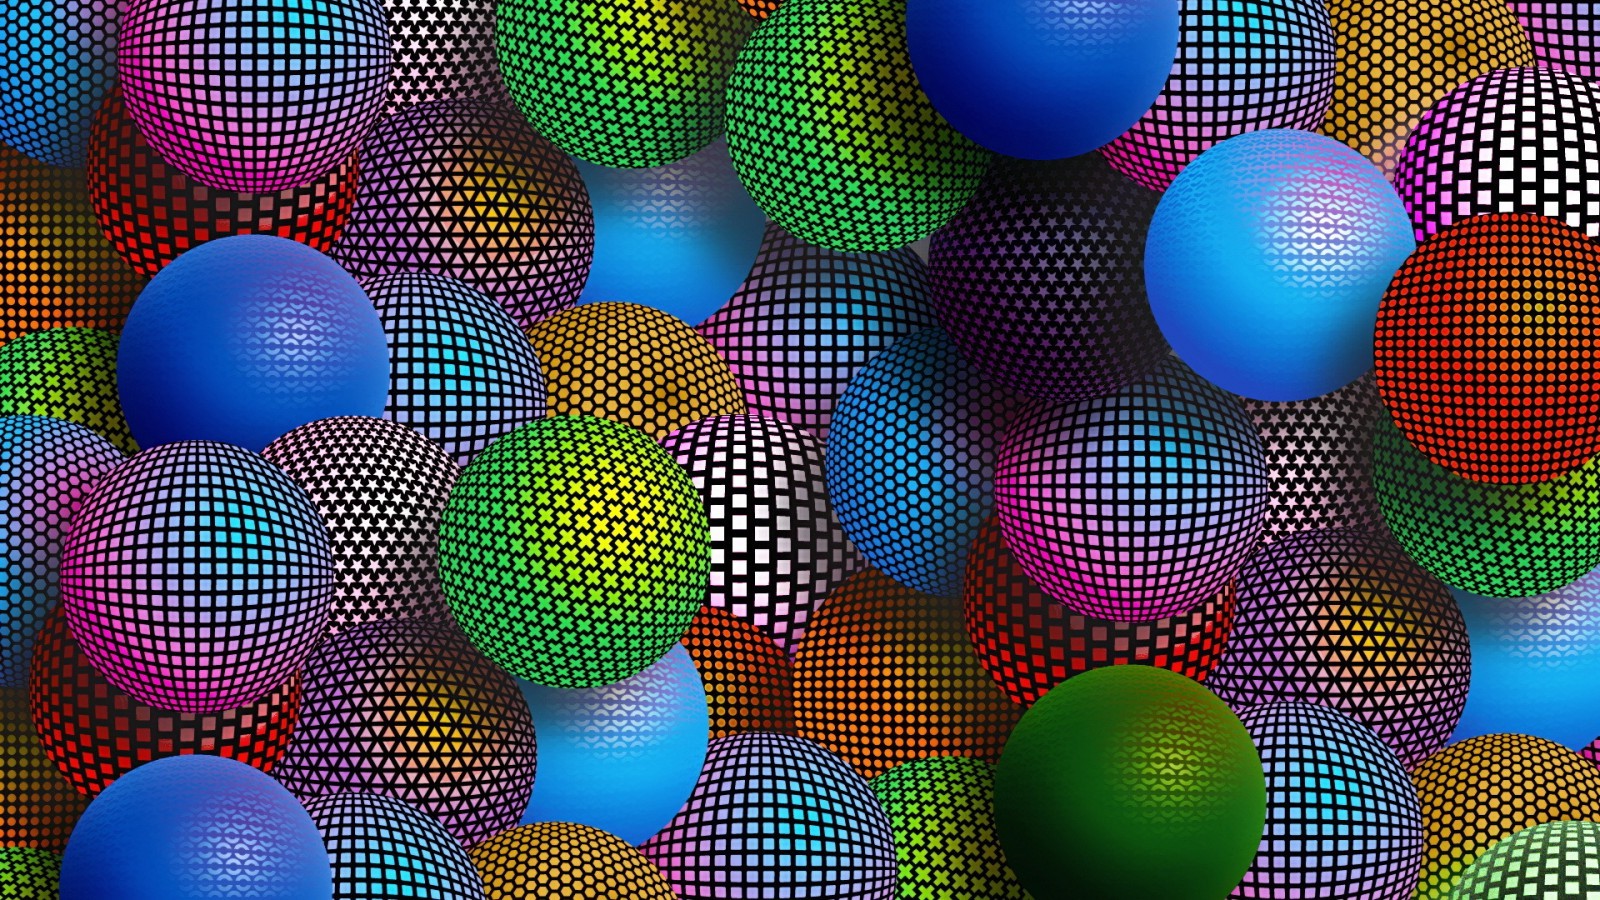 sphere, Ball, Abstract, Digital Art Wallpaper